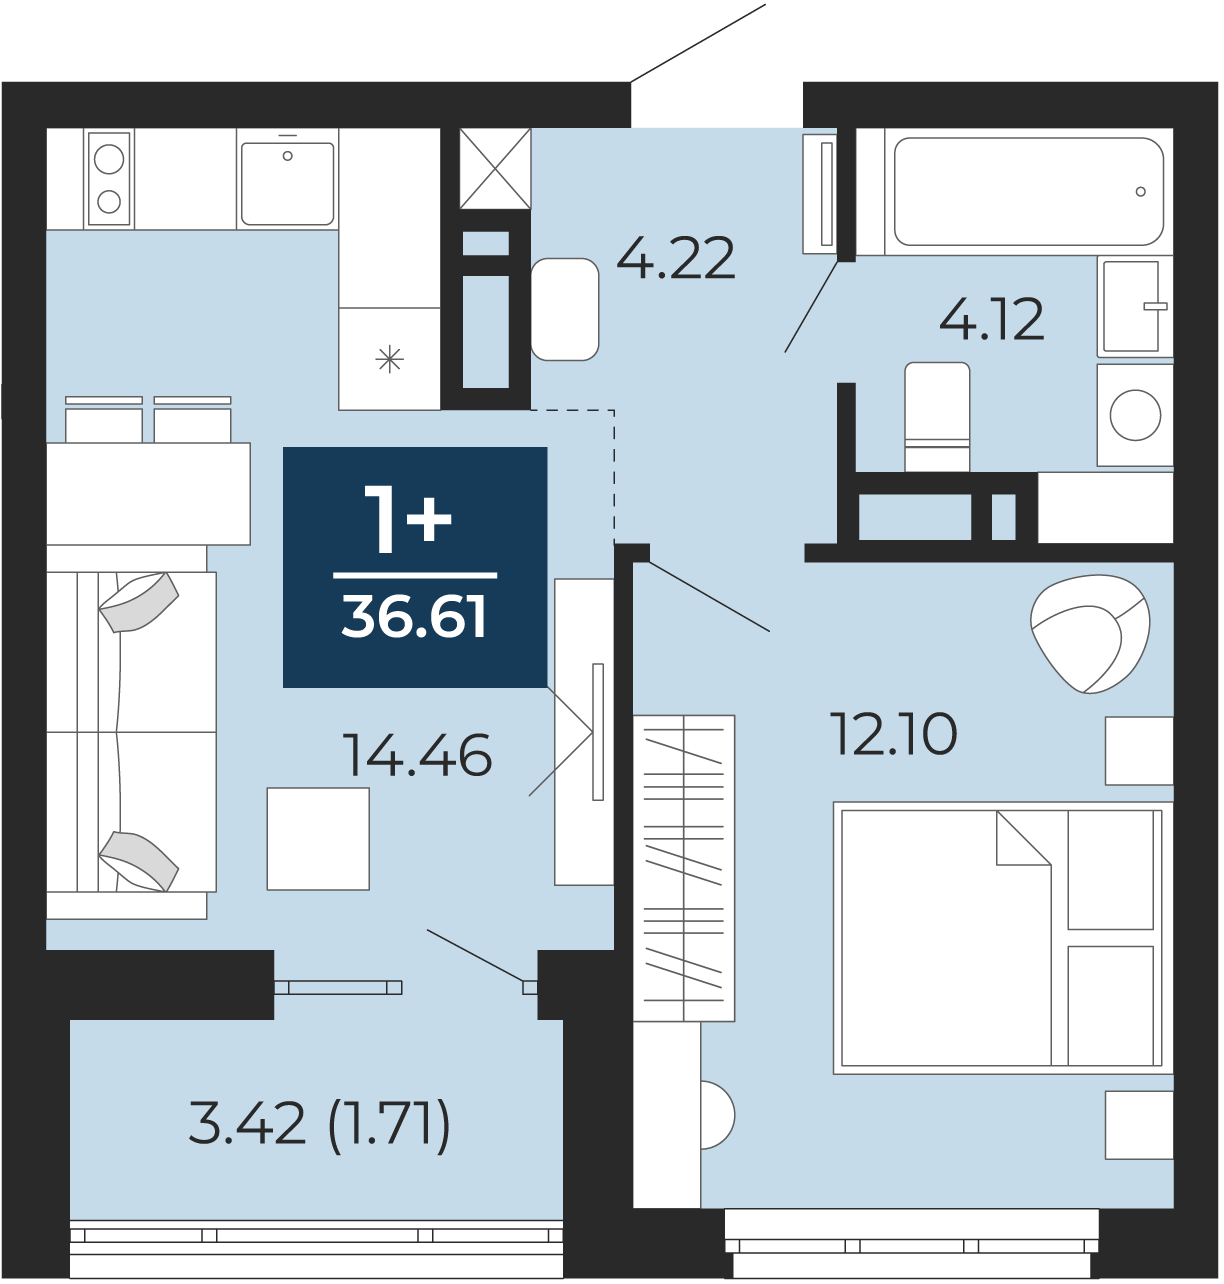 Квартира № 235, 1-комнатная, 36.61 кв. м, 11 этаж